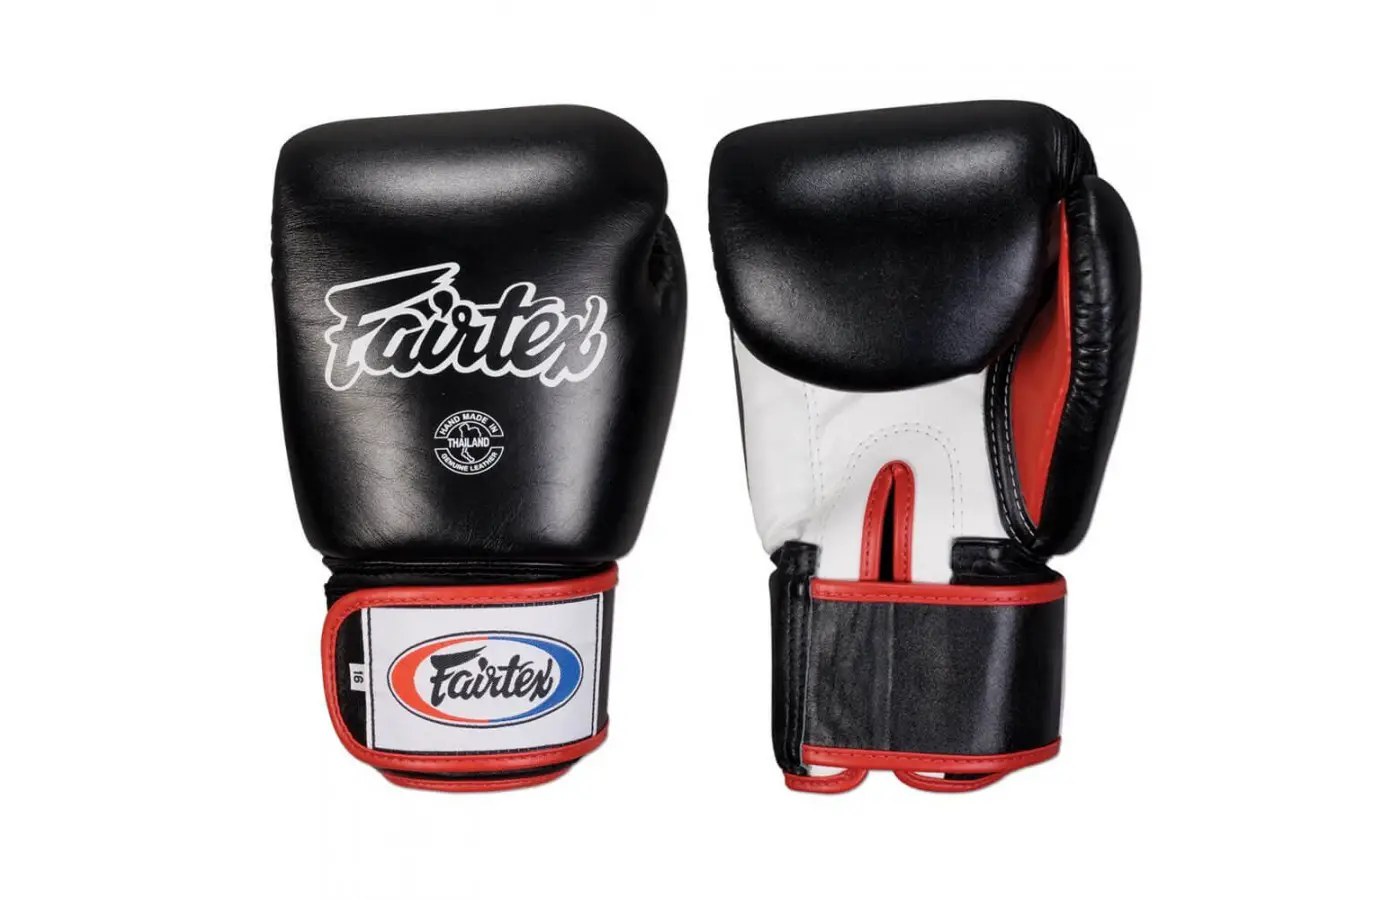 Fairtex Boxing gloves